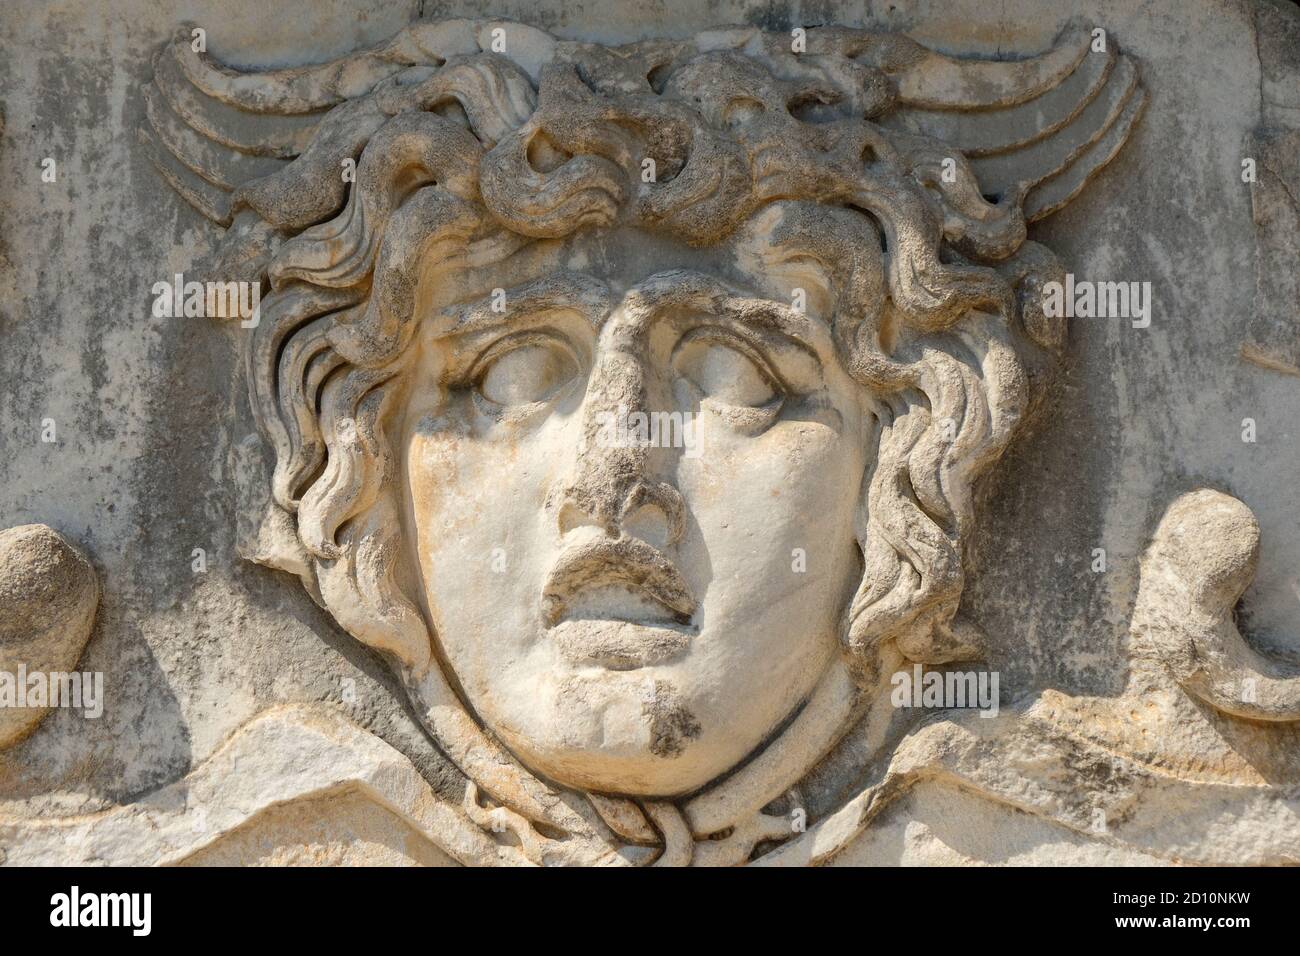 Uomo viso - Antico rilievo Greco - scultura in muro - Tempio di Apollo Foto Stock